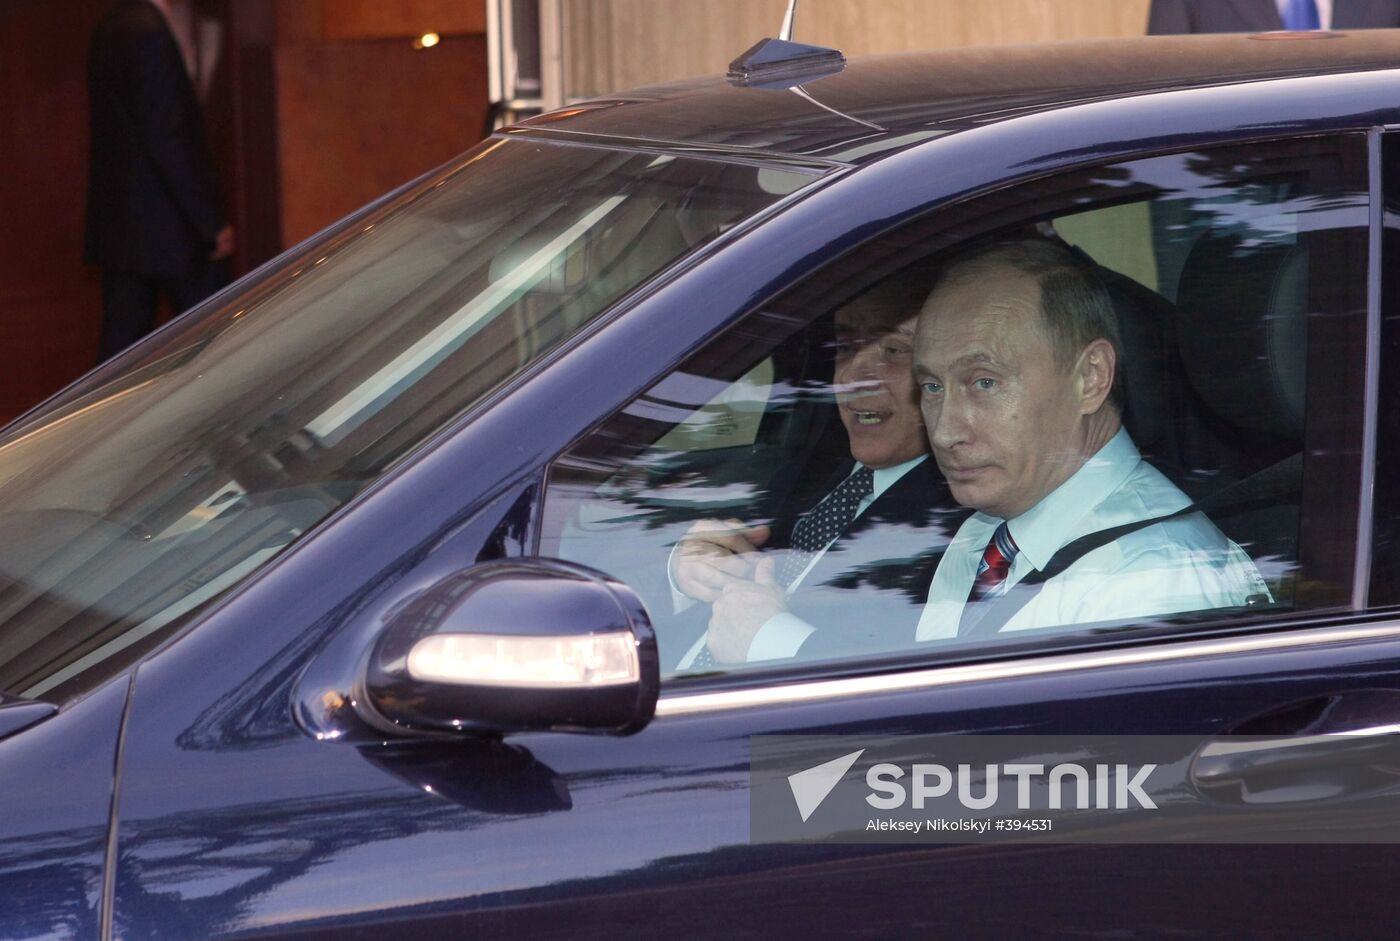 Vladimir Putin meeting Silvio Berlusconi in Sochi